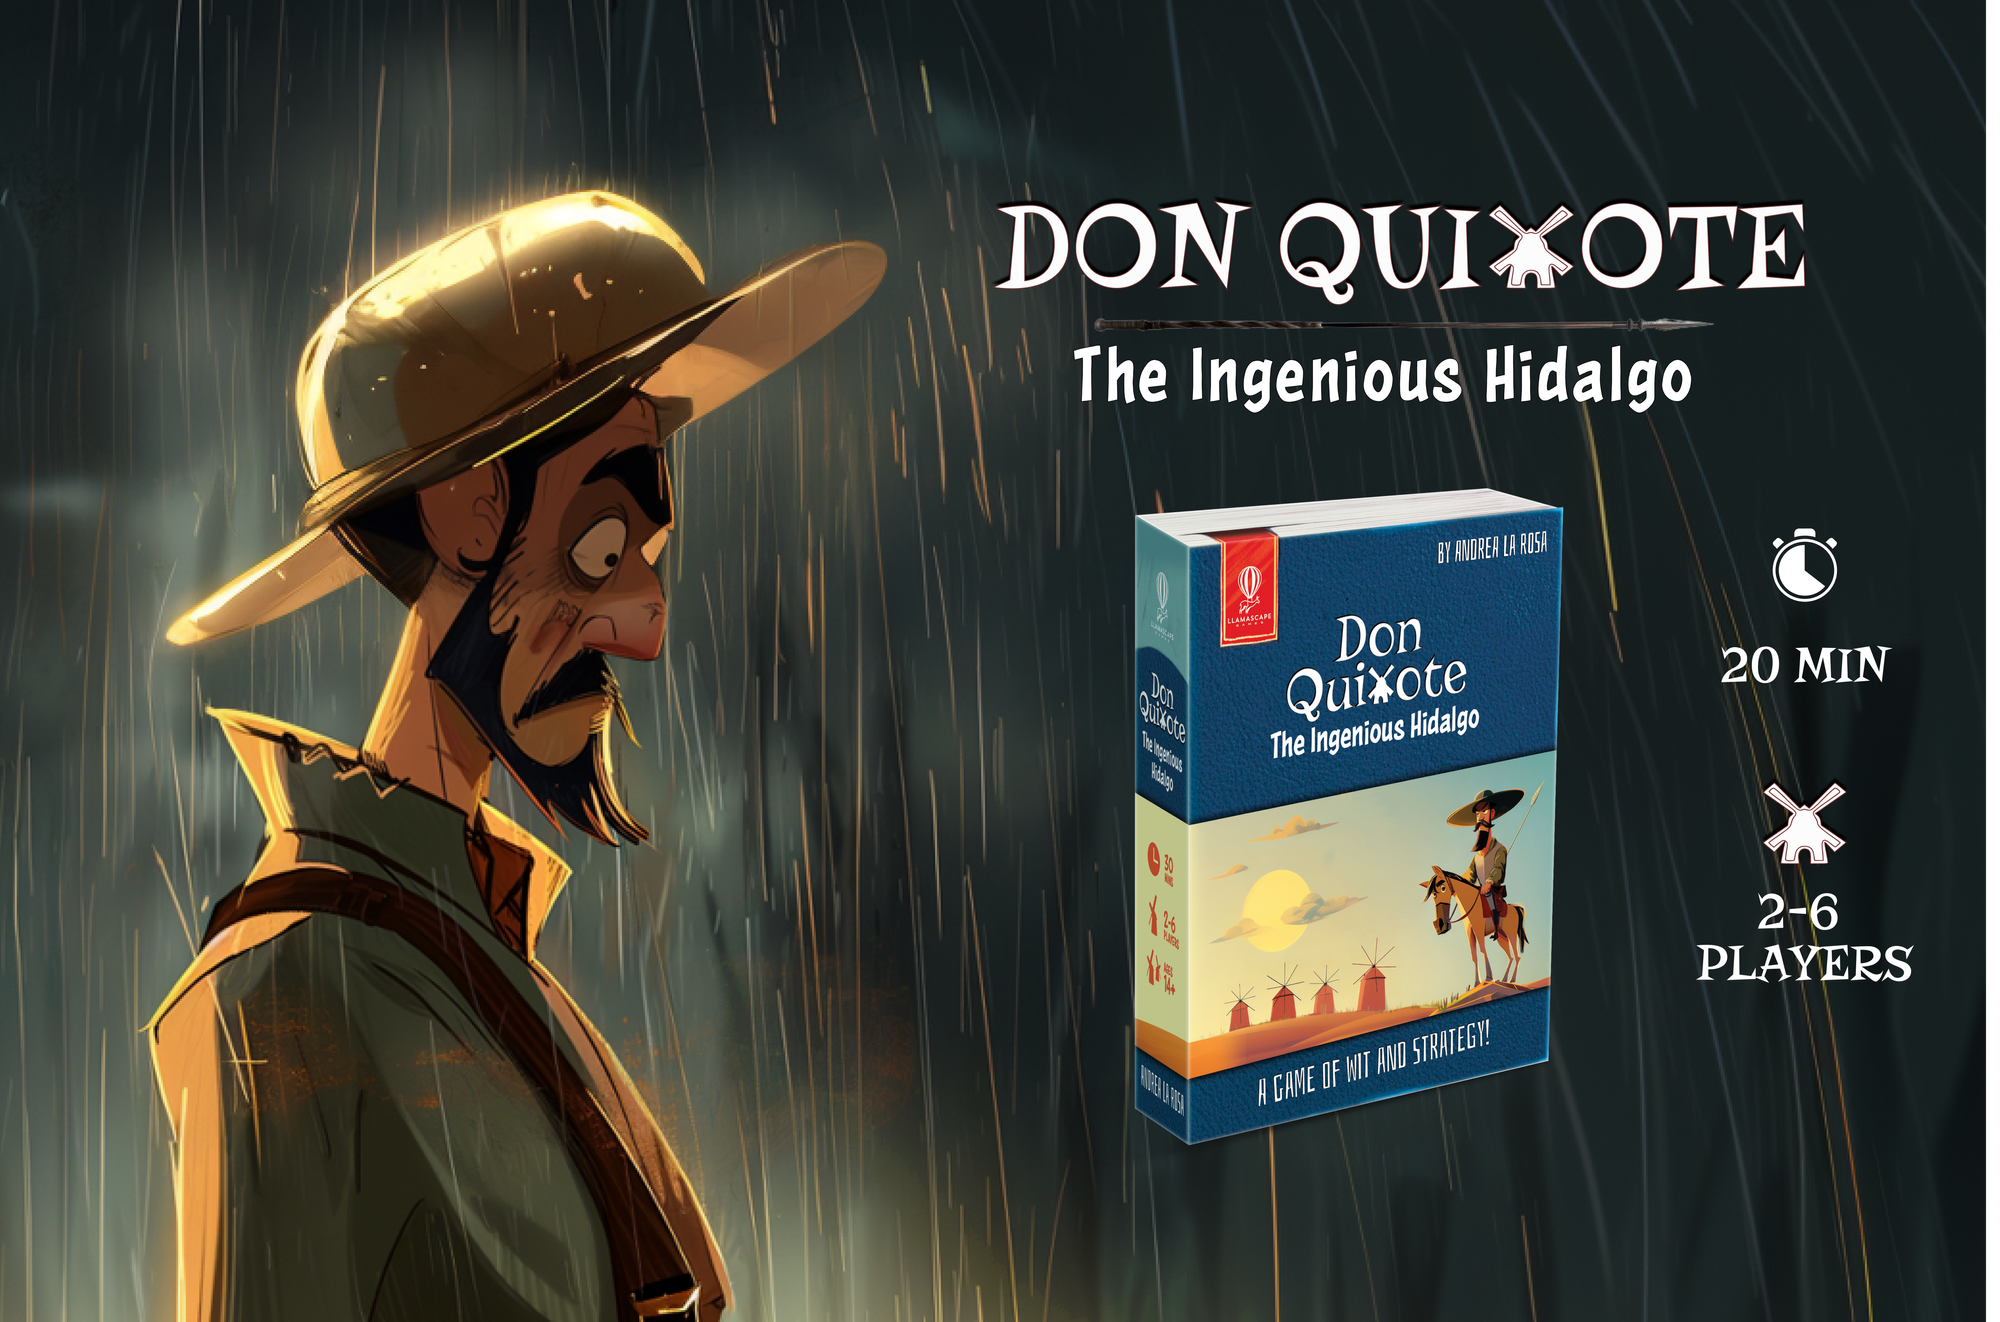 Don Quixote, the ingenious hidalgo